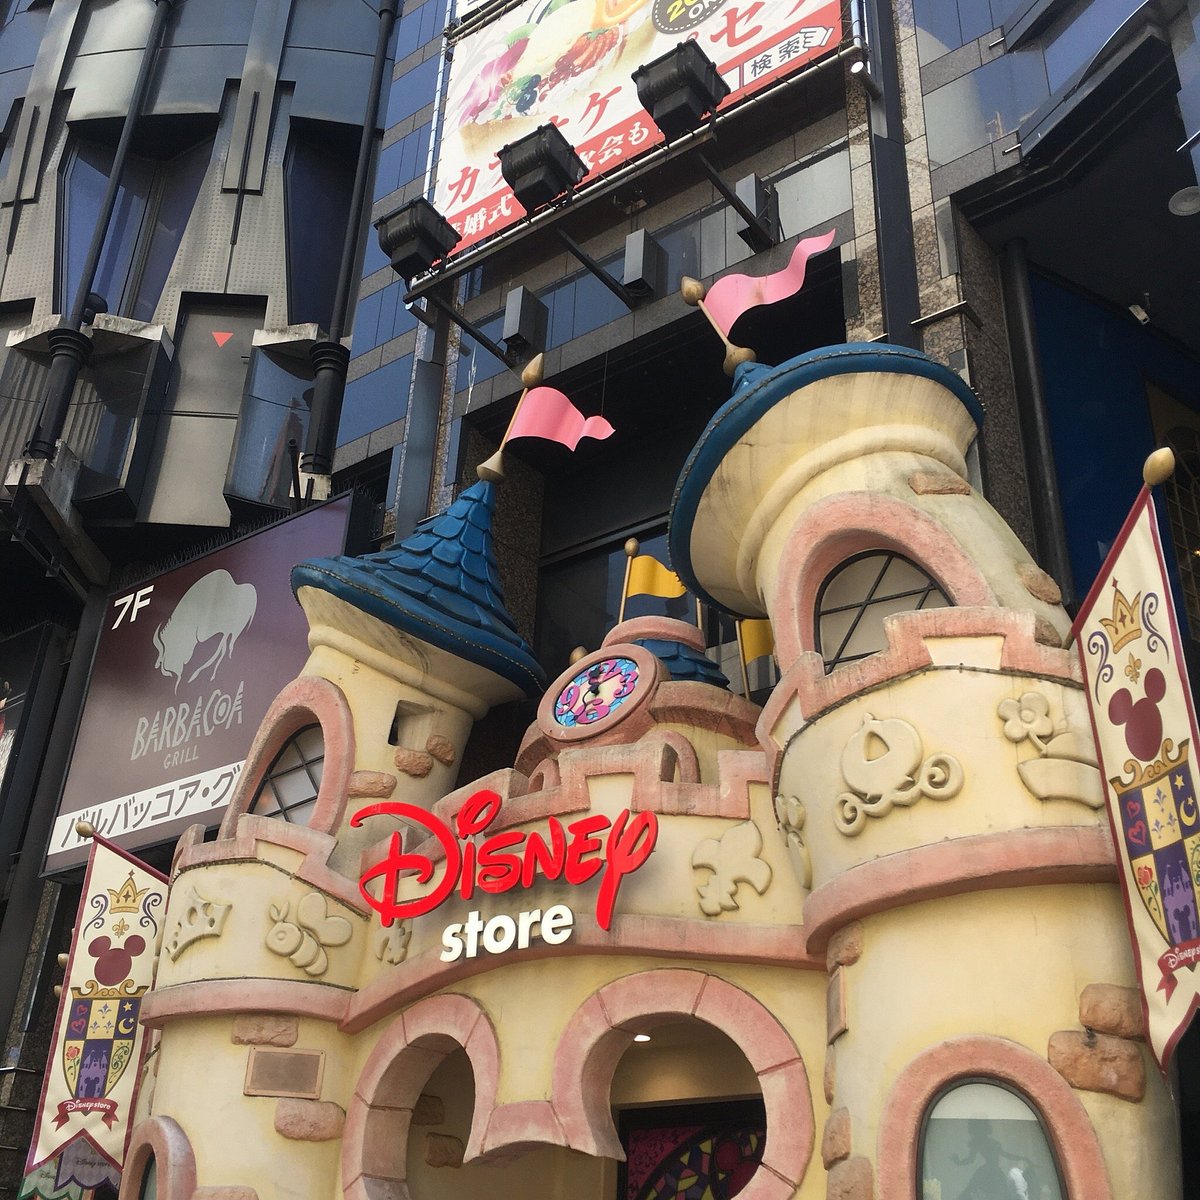 Disney Store's new Korean location opens –